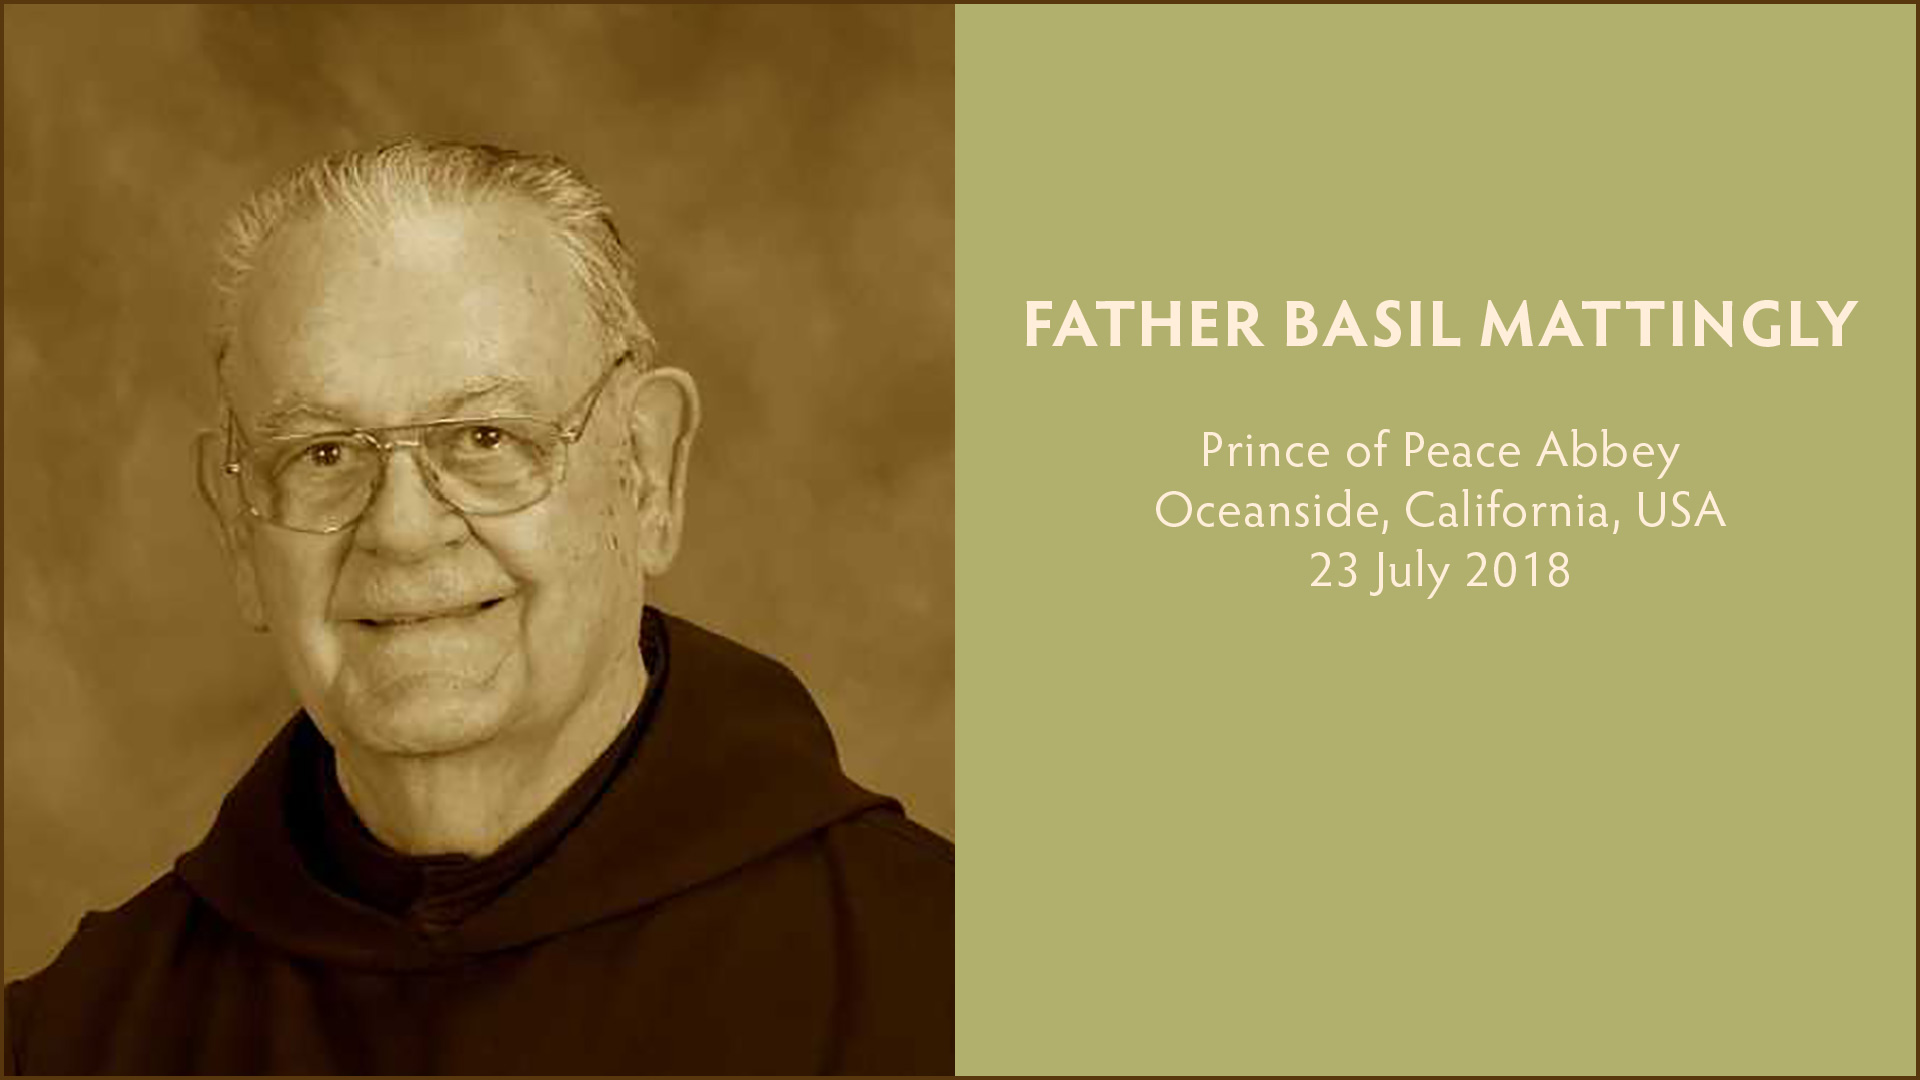 Father Basil Mattingly